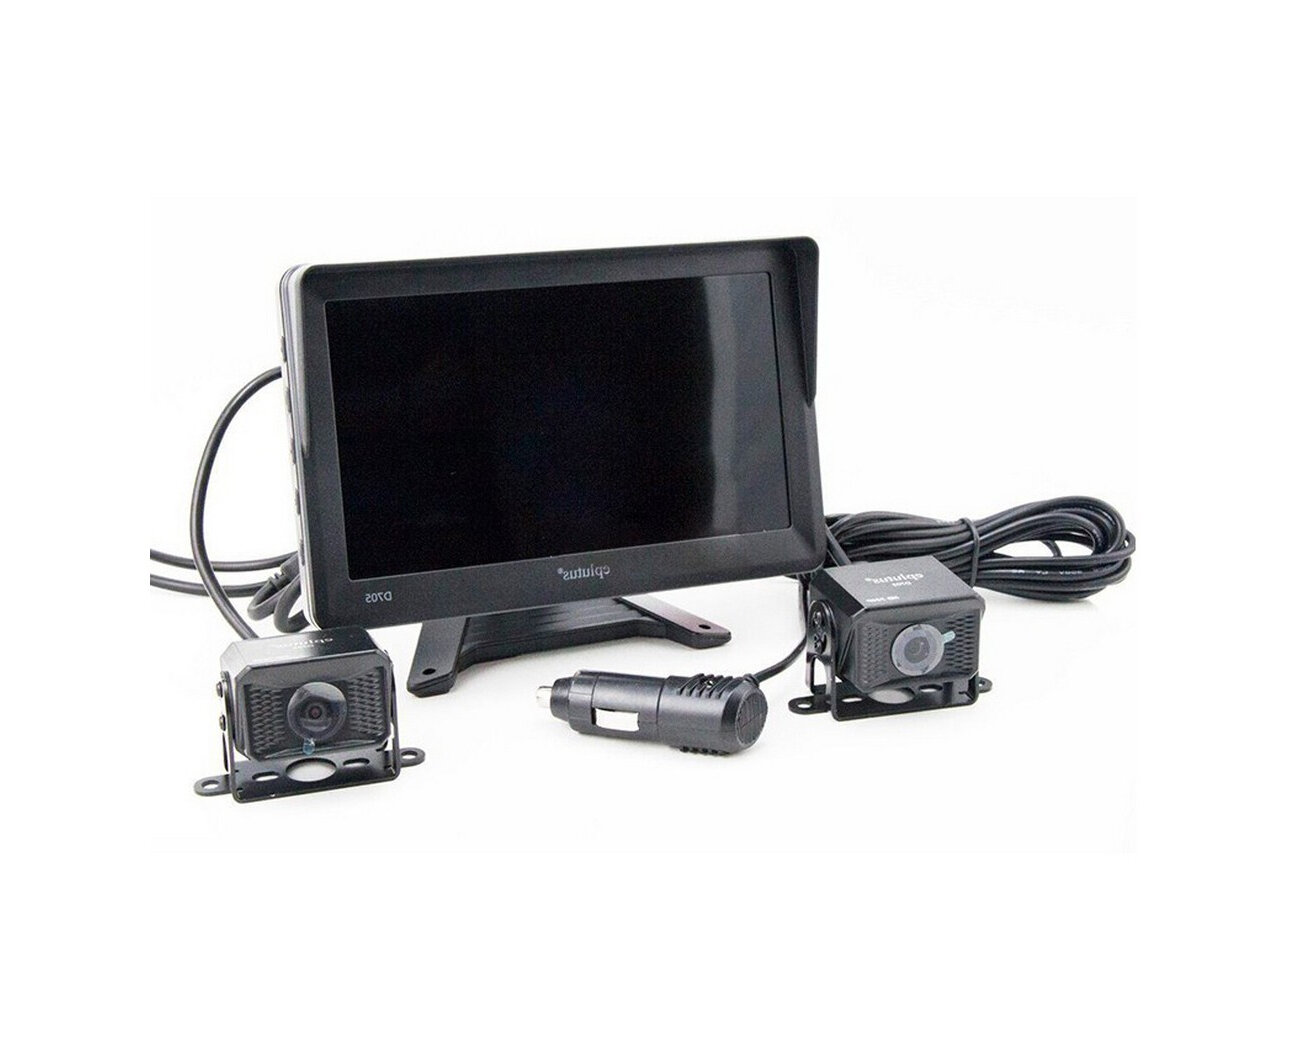 Eplutus Д705 (Rec) (U59220VA) - видеорегистратор c записью на SD карту до 128 с двумя AHD камерами заднего вида. Угол обзора 140 град